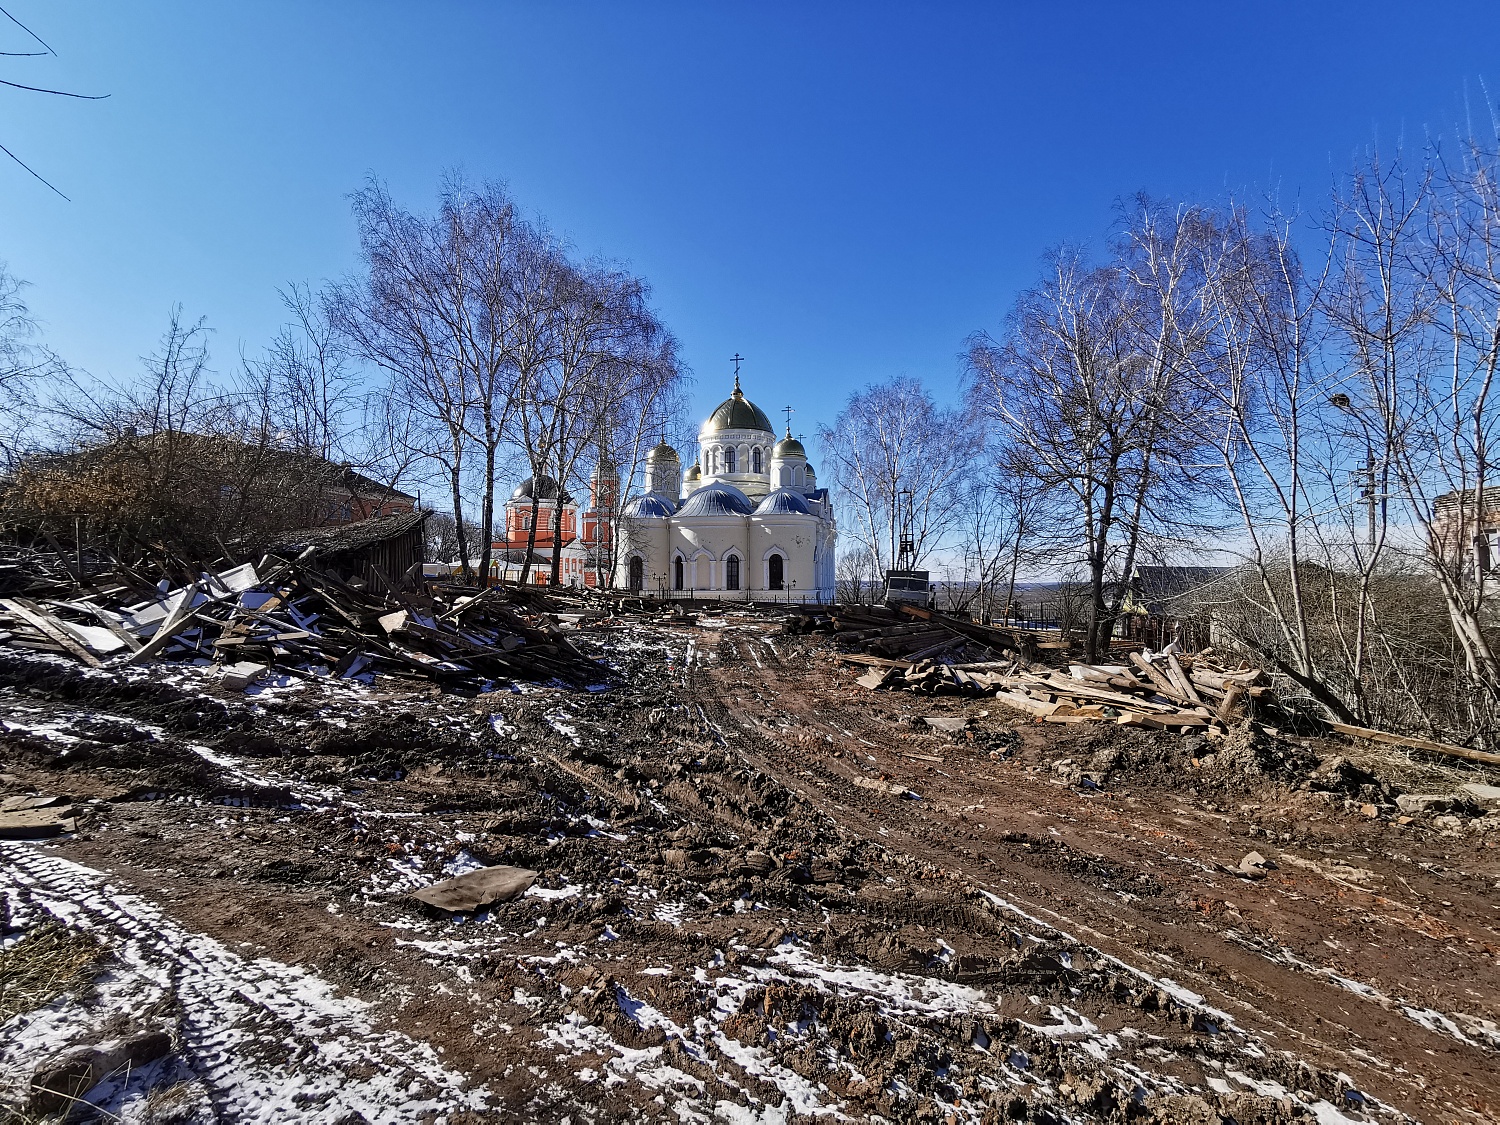 Экологические изыскания на территории Никитского монастыря, Москва